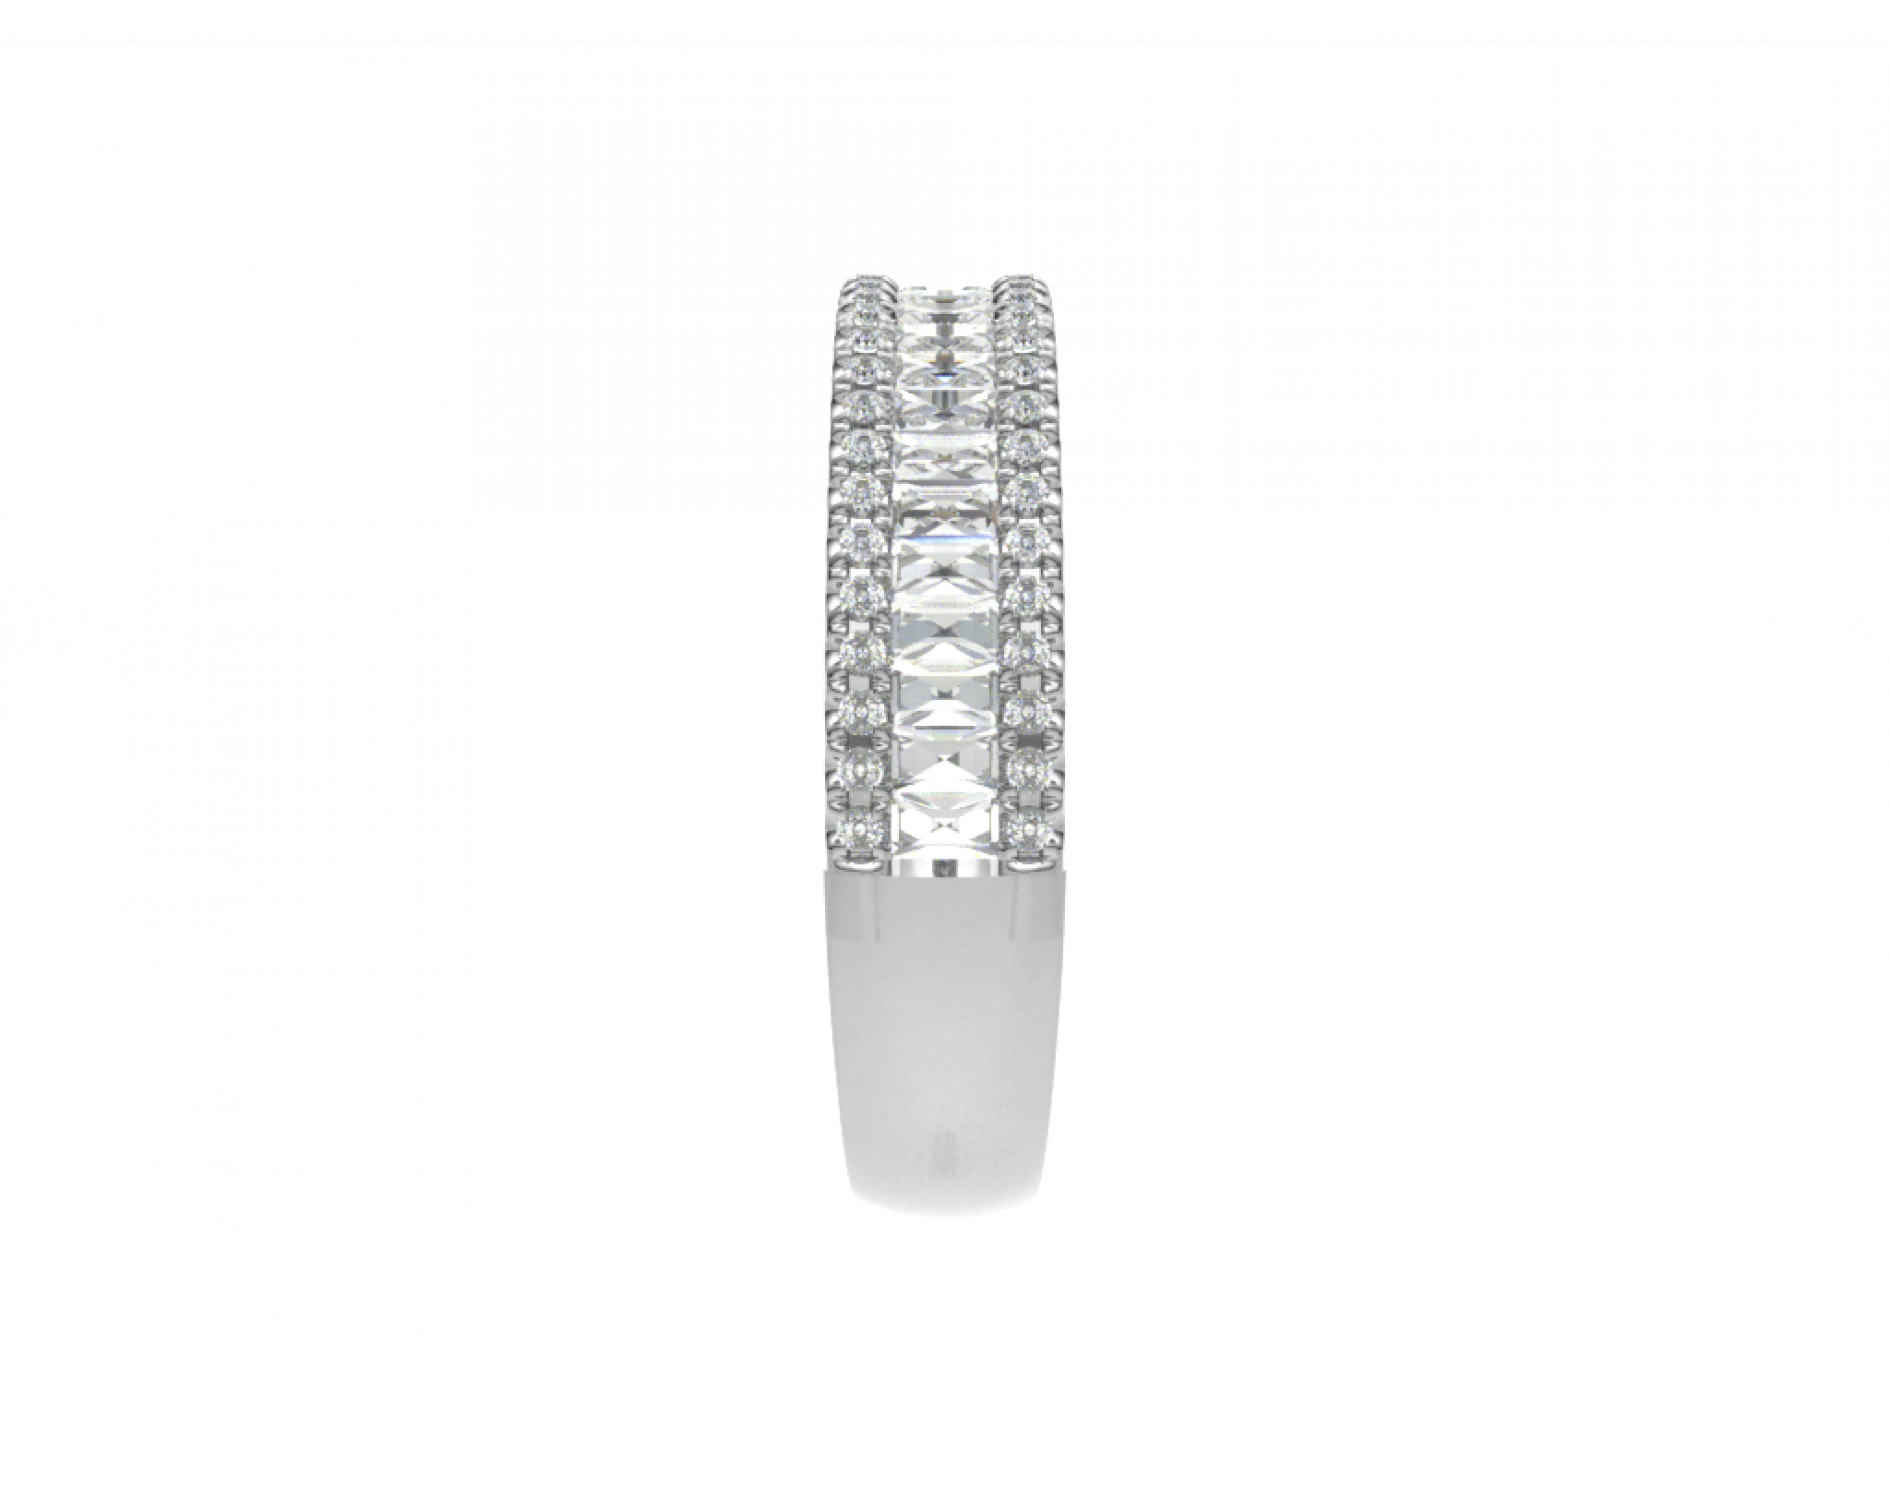 platinum 950 multirow round & baguette diamond ring Photos & images